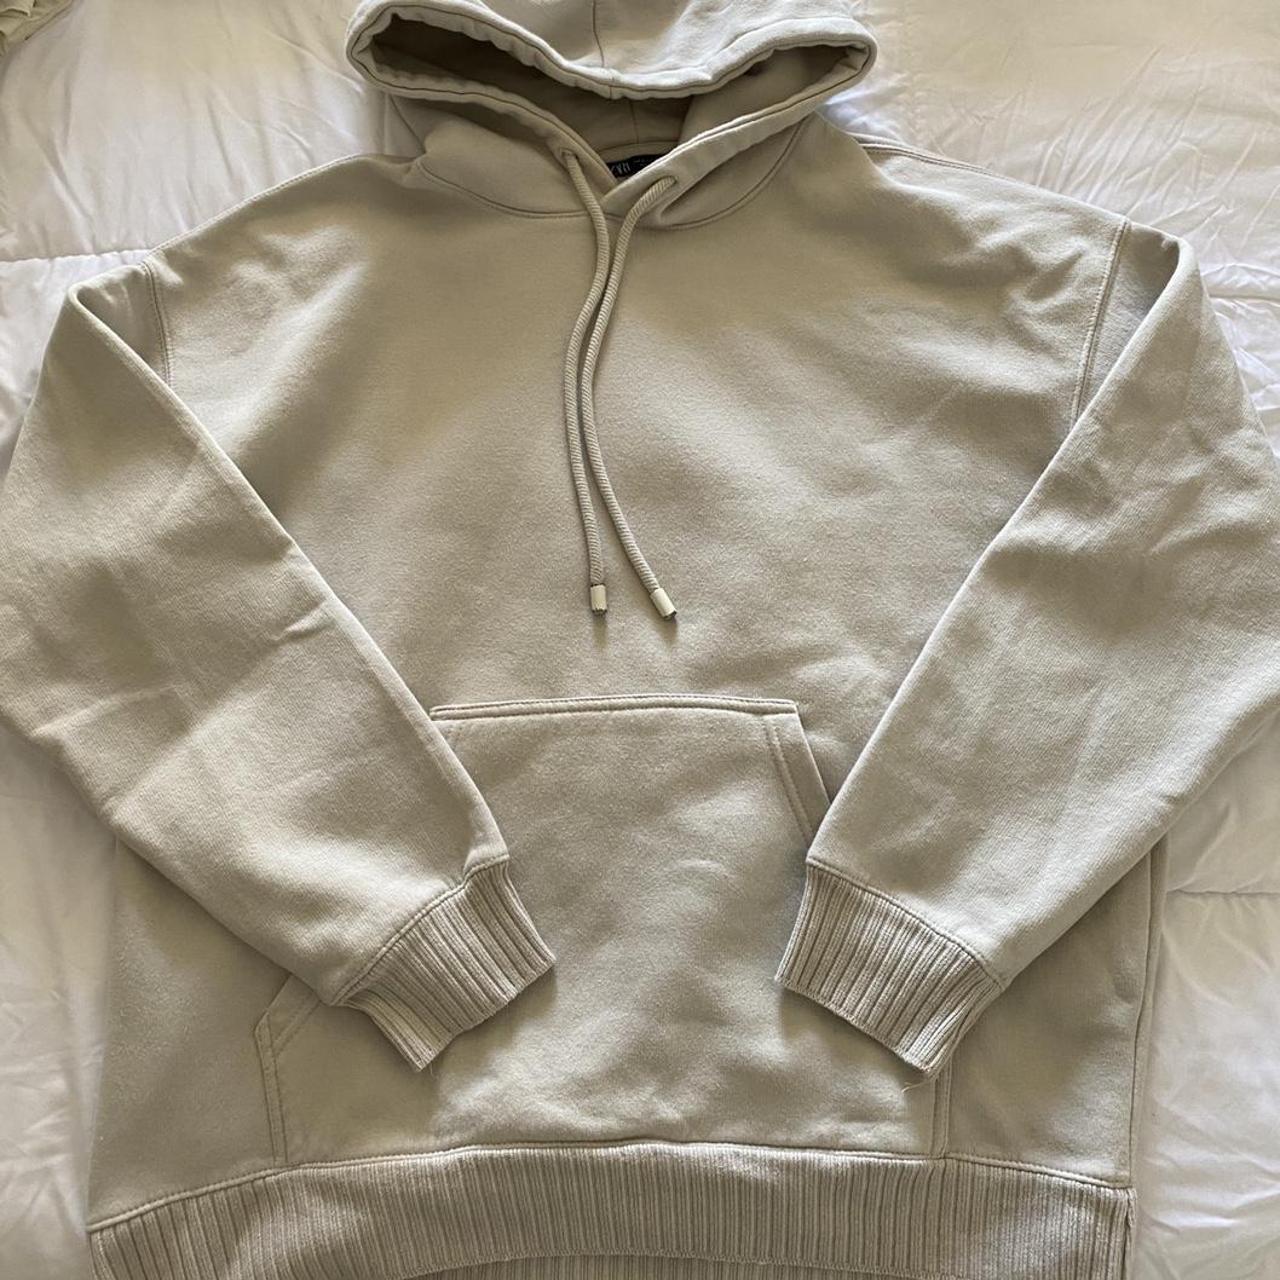 Zara beige oversized hoodie Size M (fits like a... - Depop